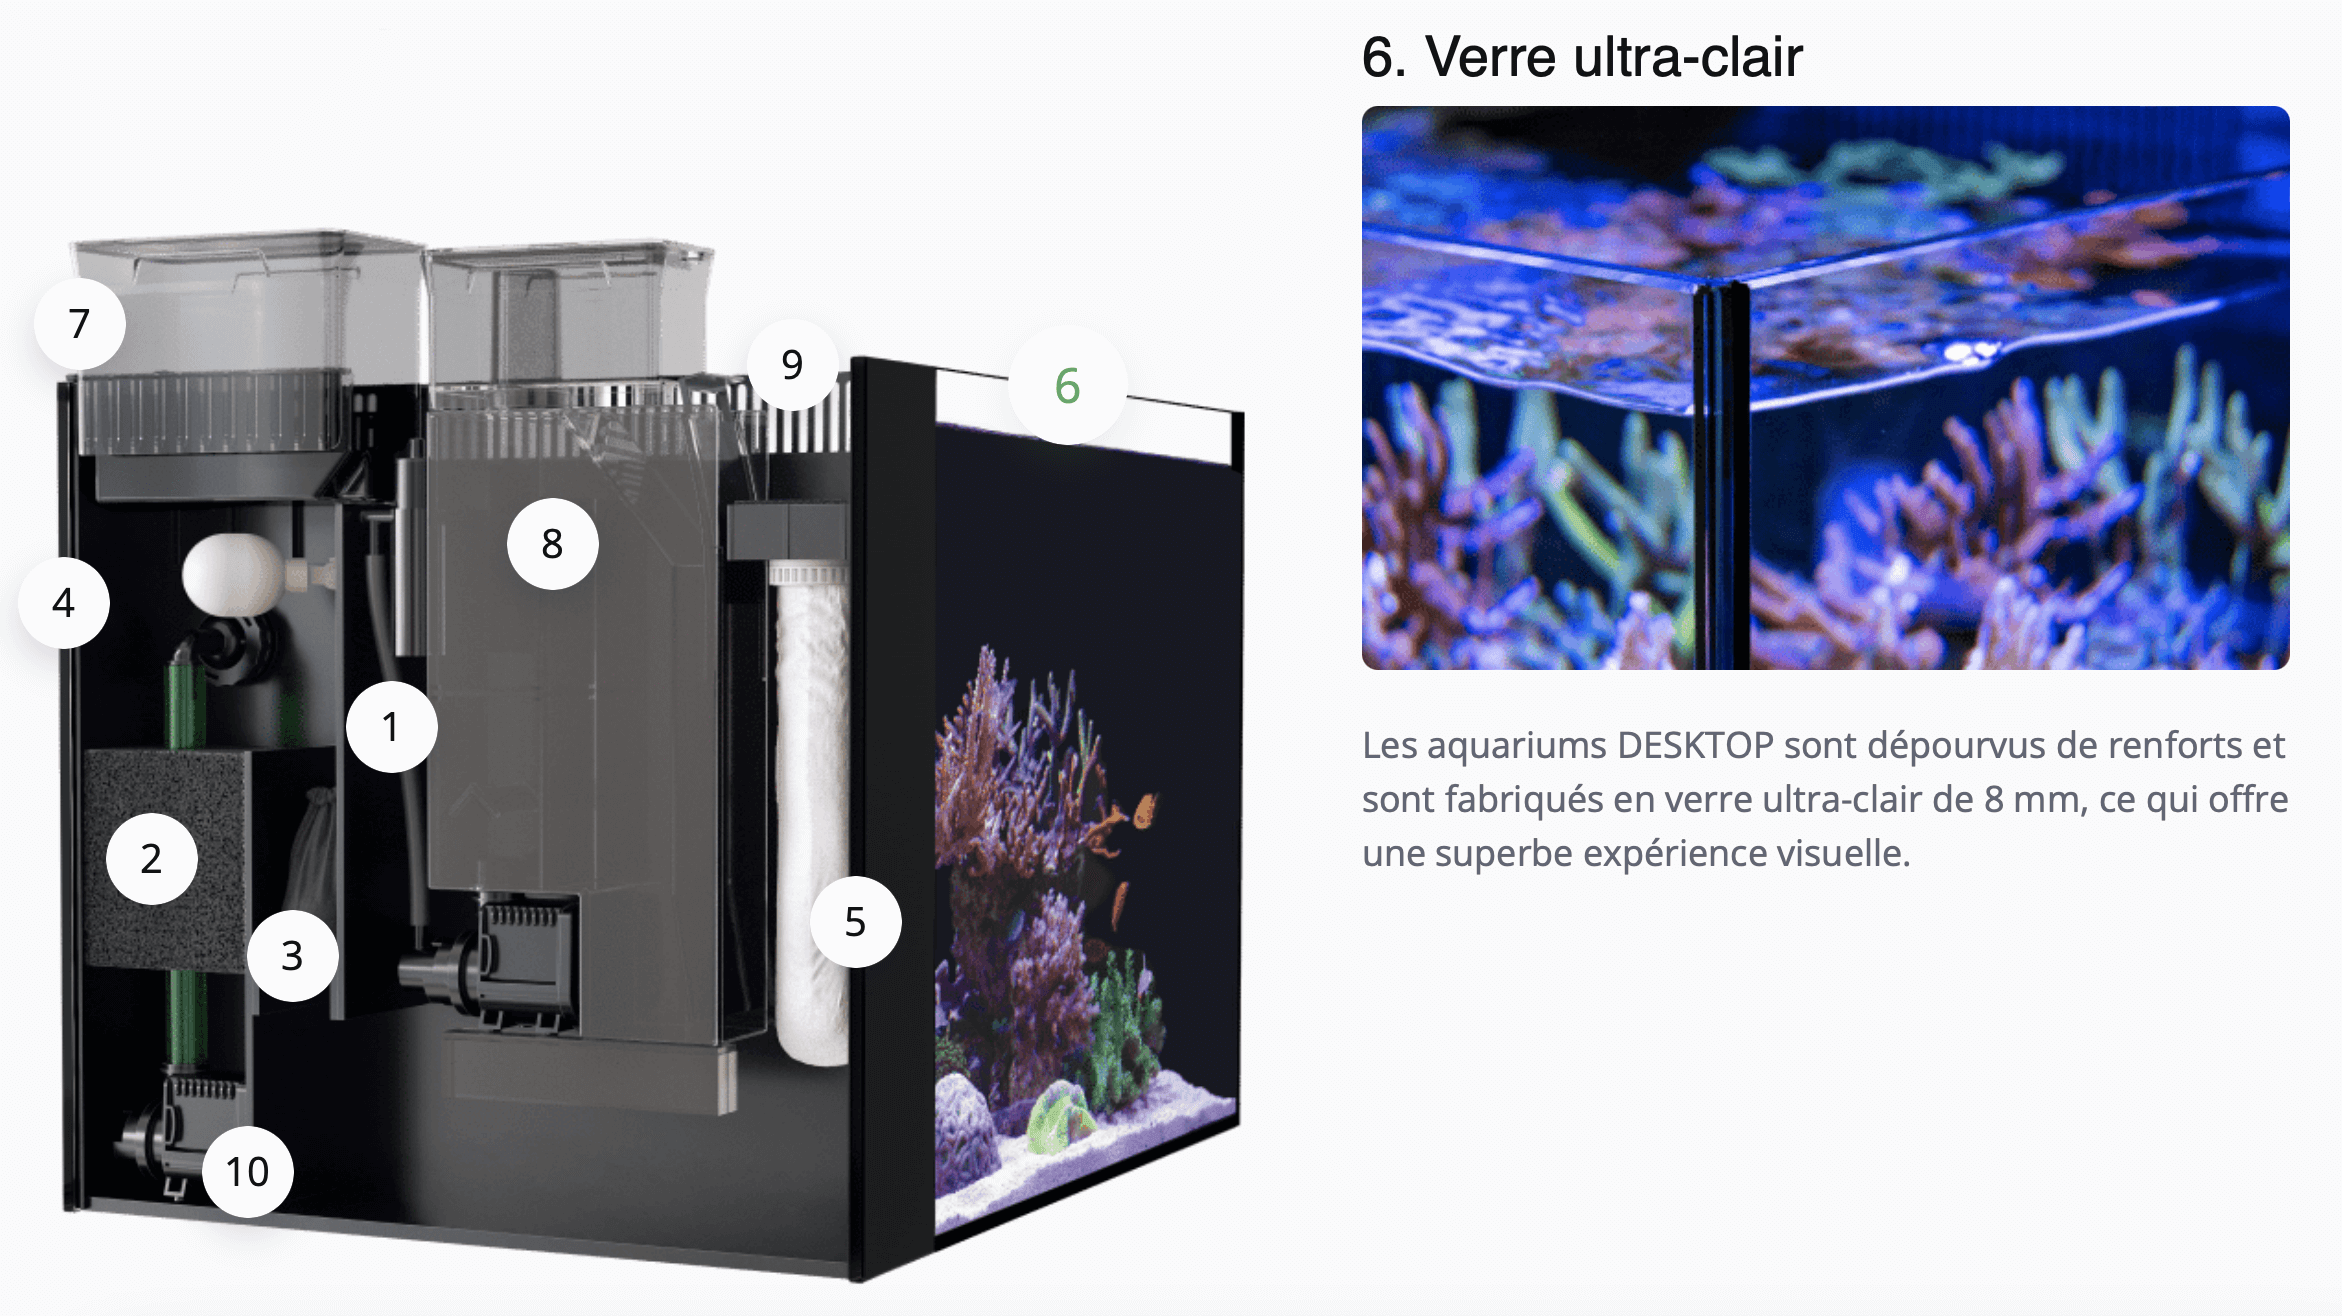 Les aquariums DESKTOP sont dépourvus de renforts et sont fabriqués en verre ultra-clair de 8 mm, ce qui offre une superbe expérience visuelle.